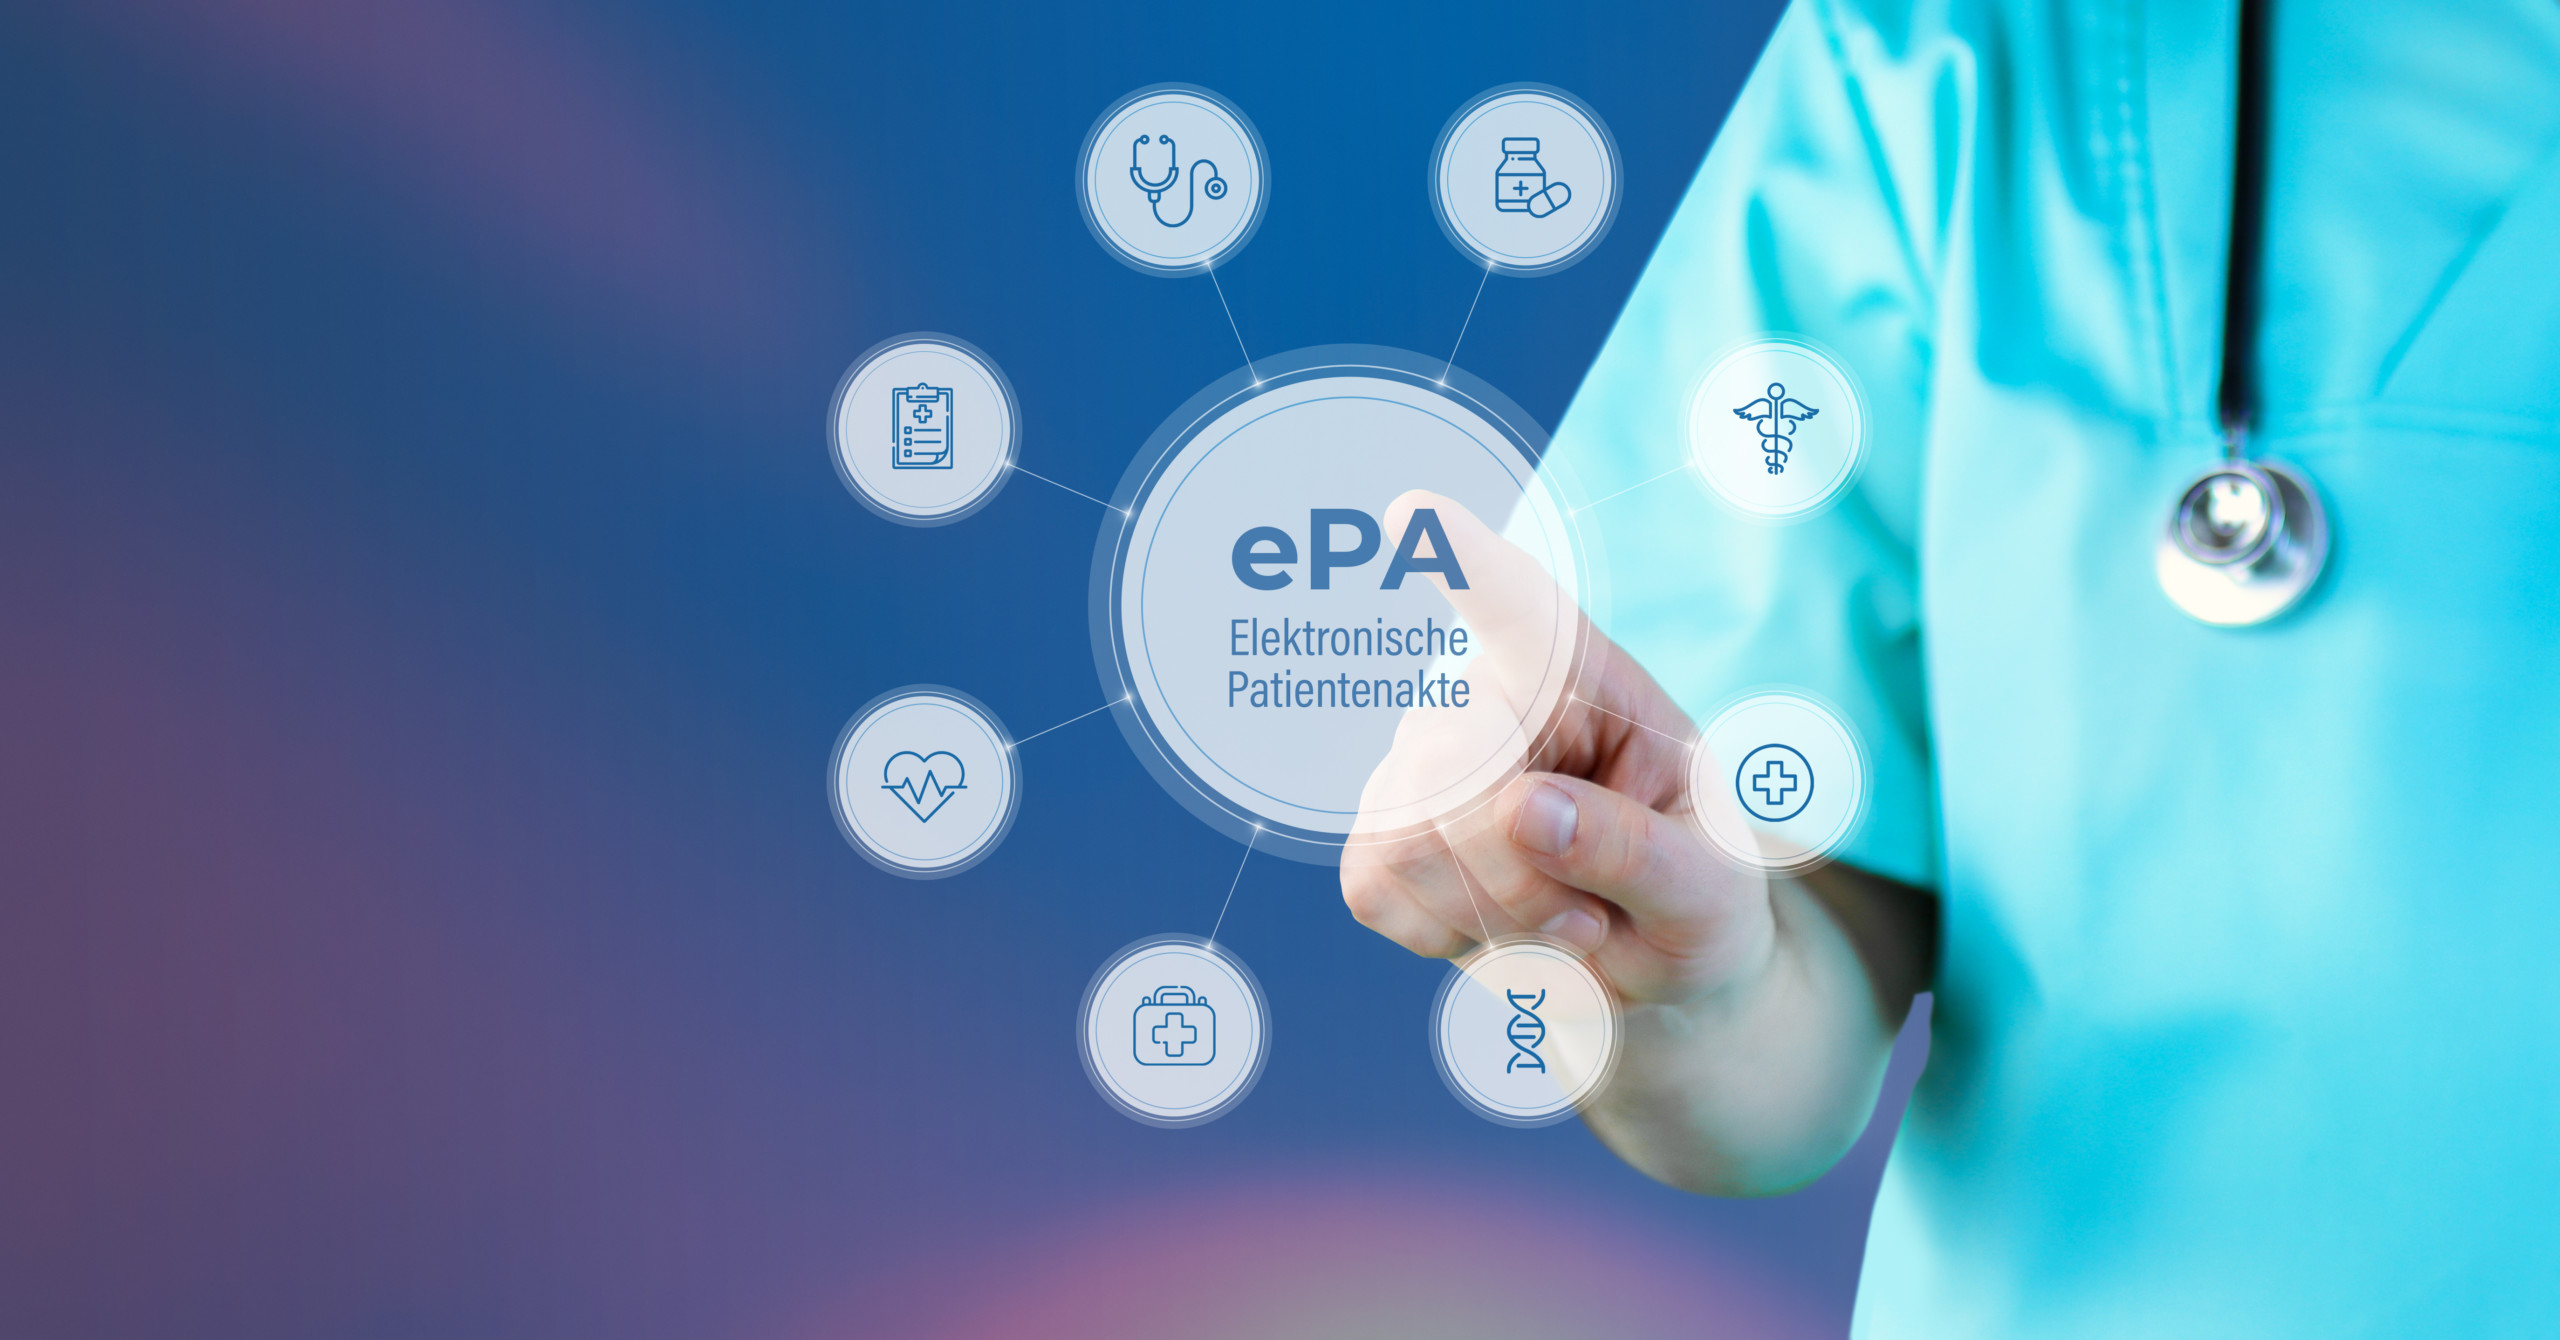 Lauterbach will ePA für alle verbindlich machen - Compugroup profitiert von digitaler Gesundheitswende